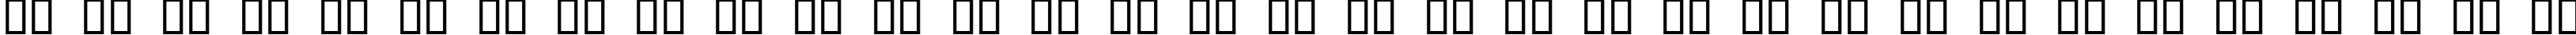 Пример написания русского алфавита шрифтом Obtuse two